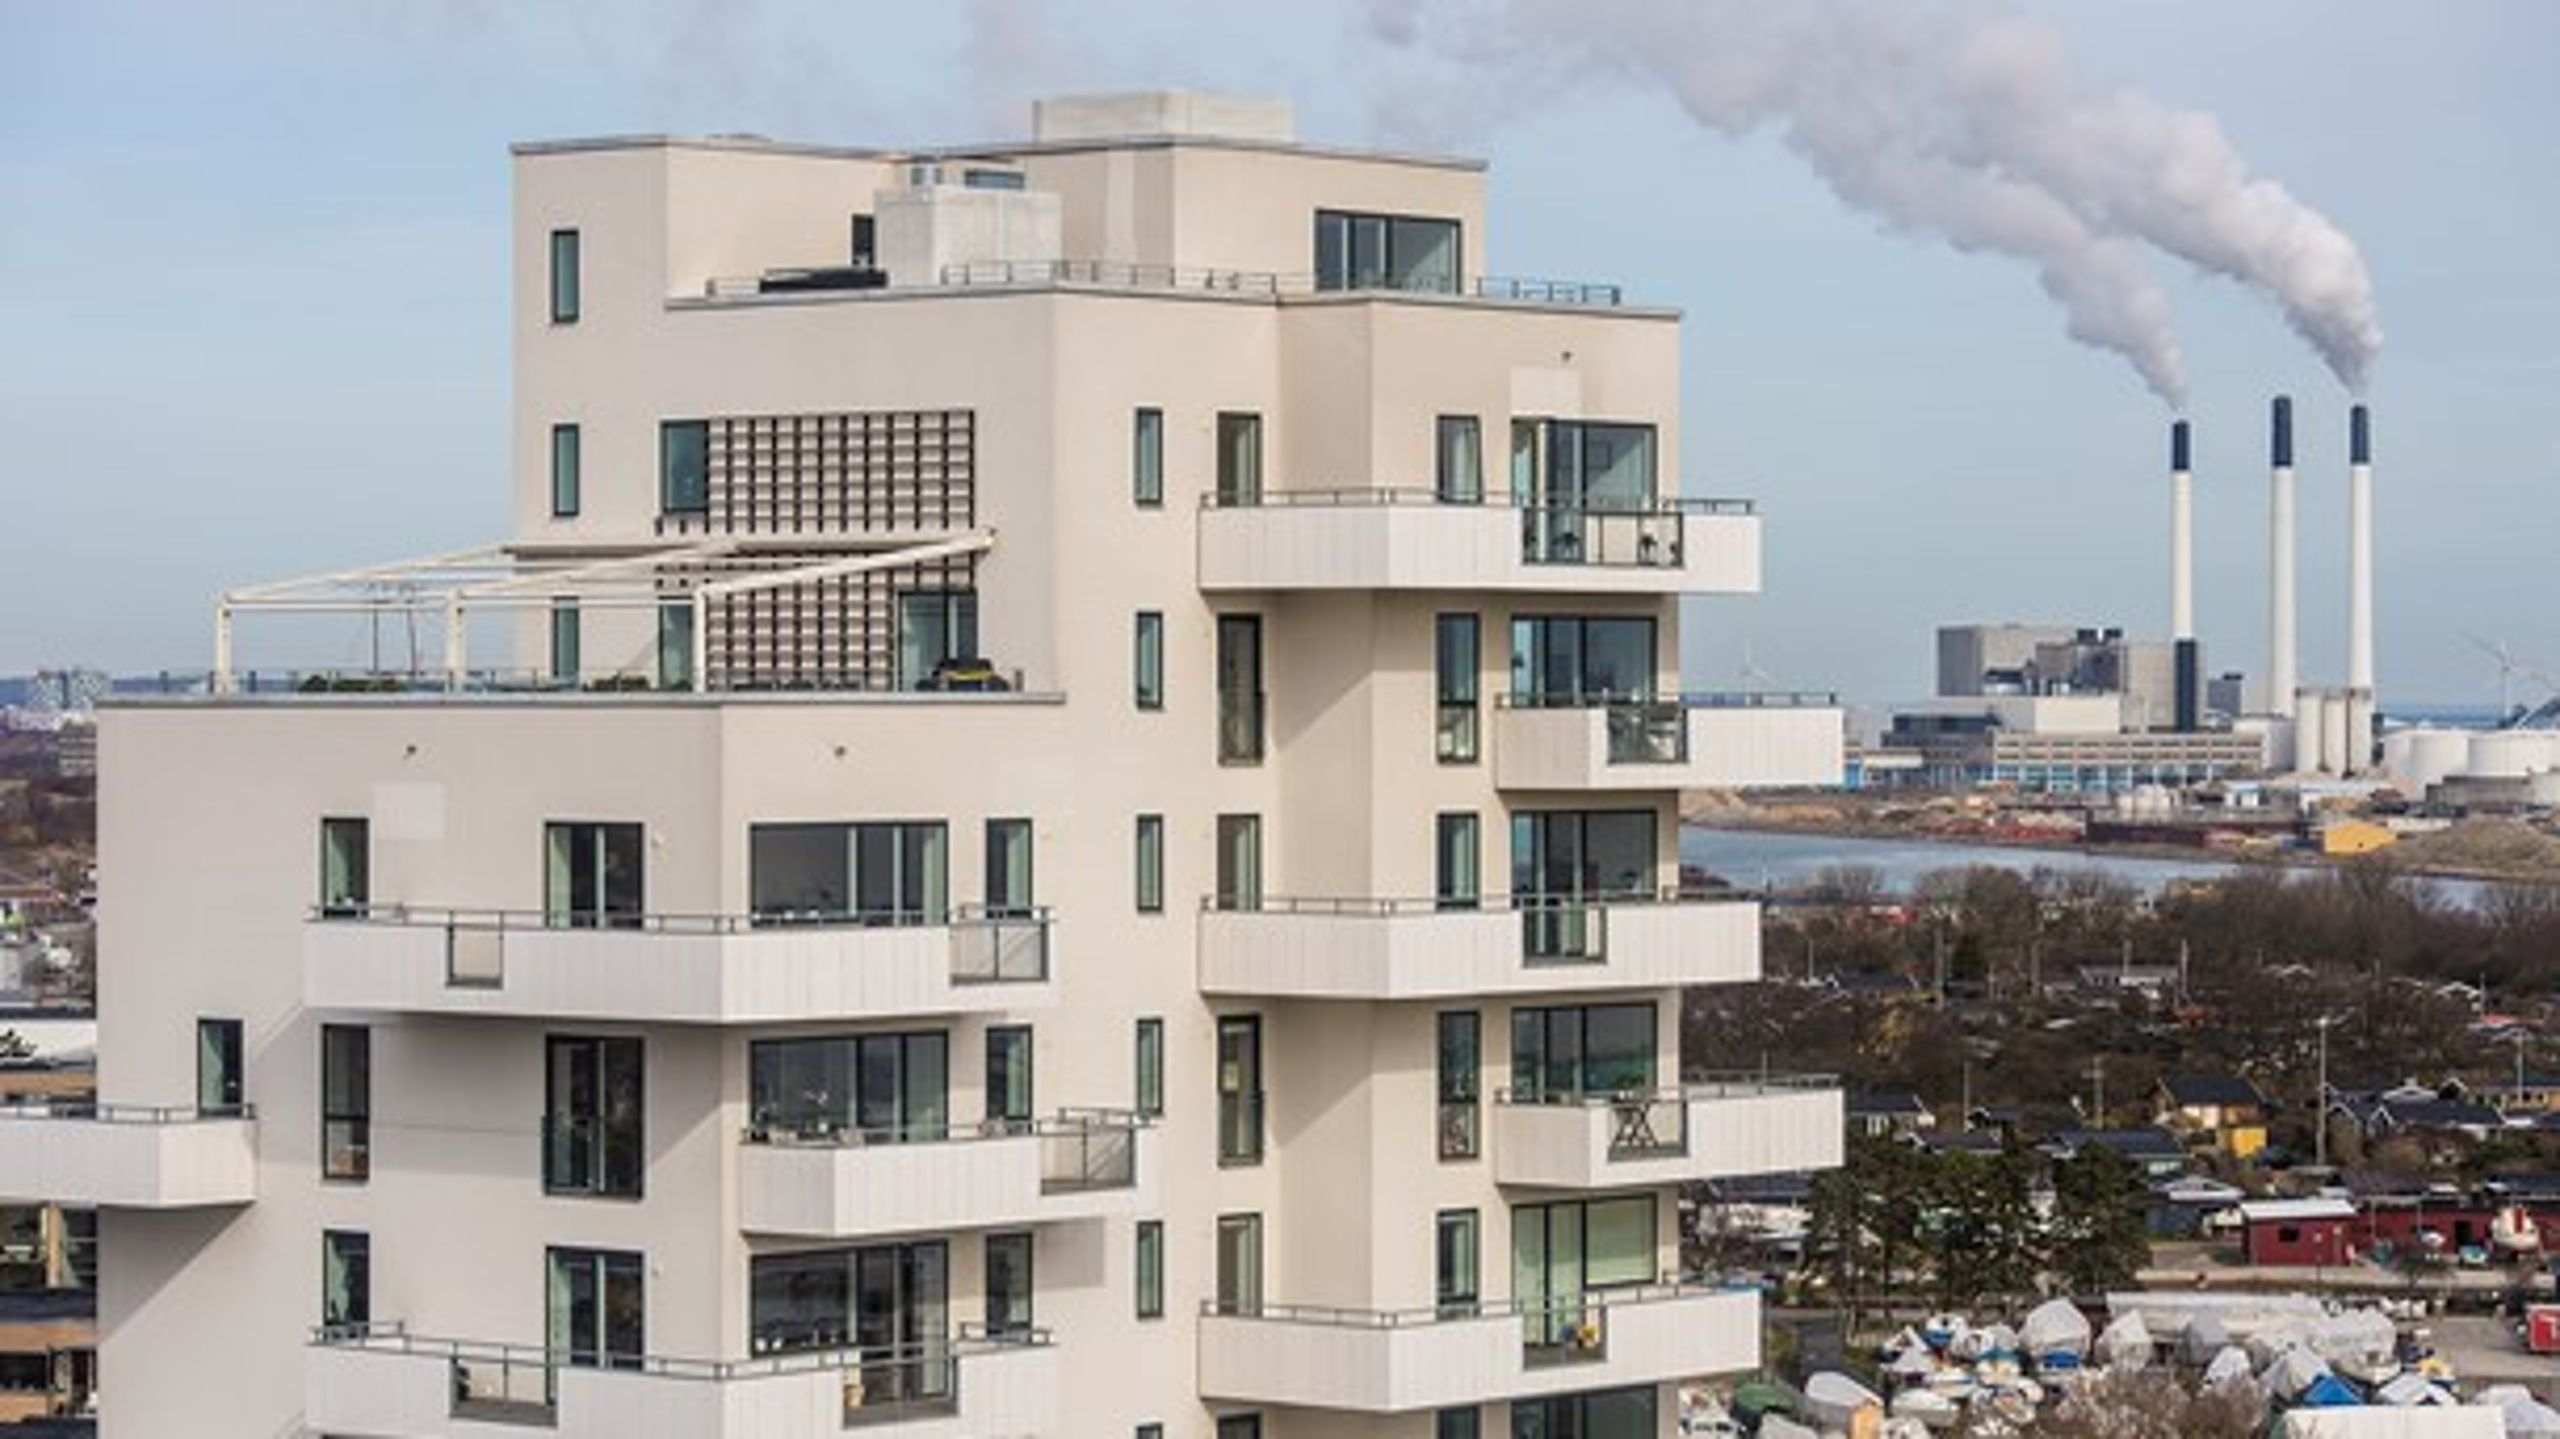 <i>LIEBHAVERI </i>København er ved at udvikle sig til en rigmandsghetto, skriver Jens Christian Grøndahl. Her eksklusive boliger ved Amager Strand.